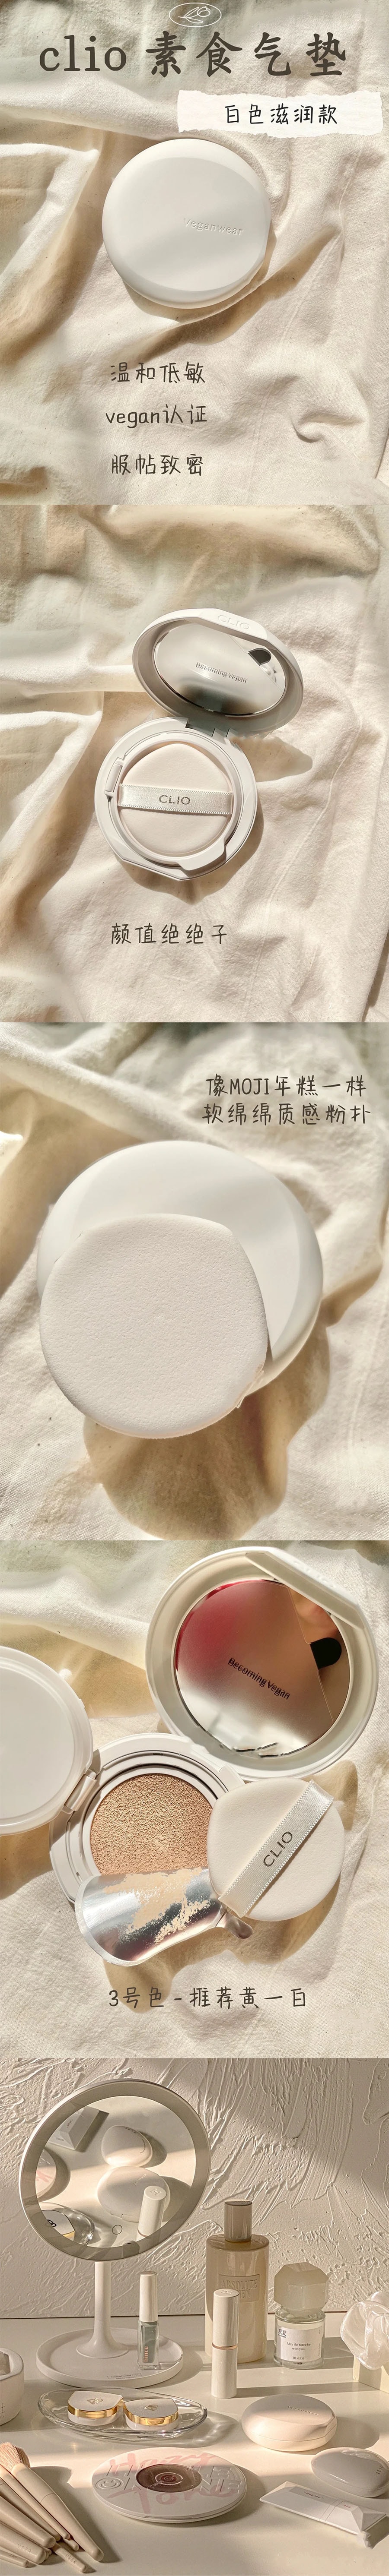 韩国 CLIO 珂莱欧 新款Veganwear素食主义水光气垫 #04 自然肤色 含替换芯 15g*2